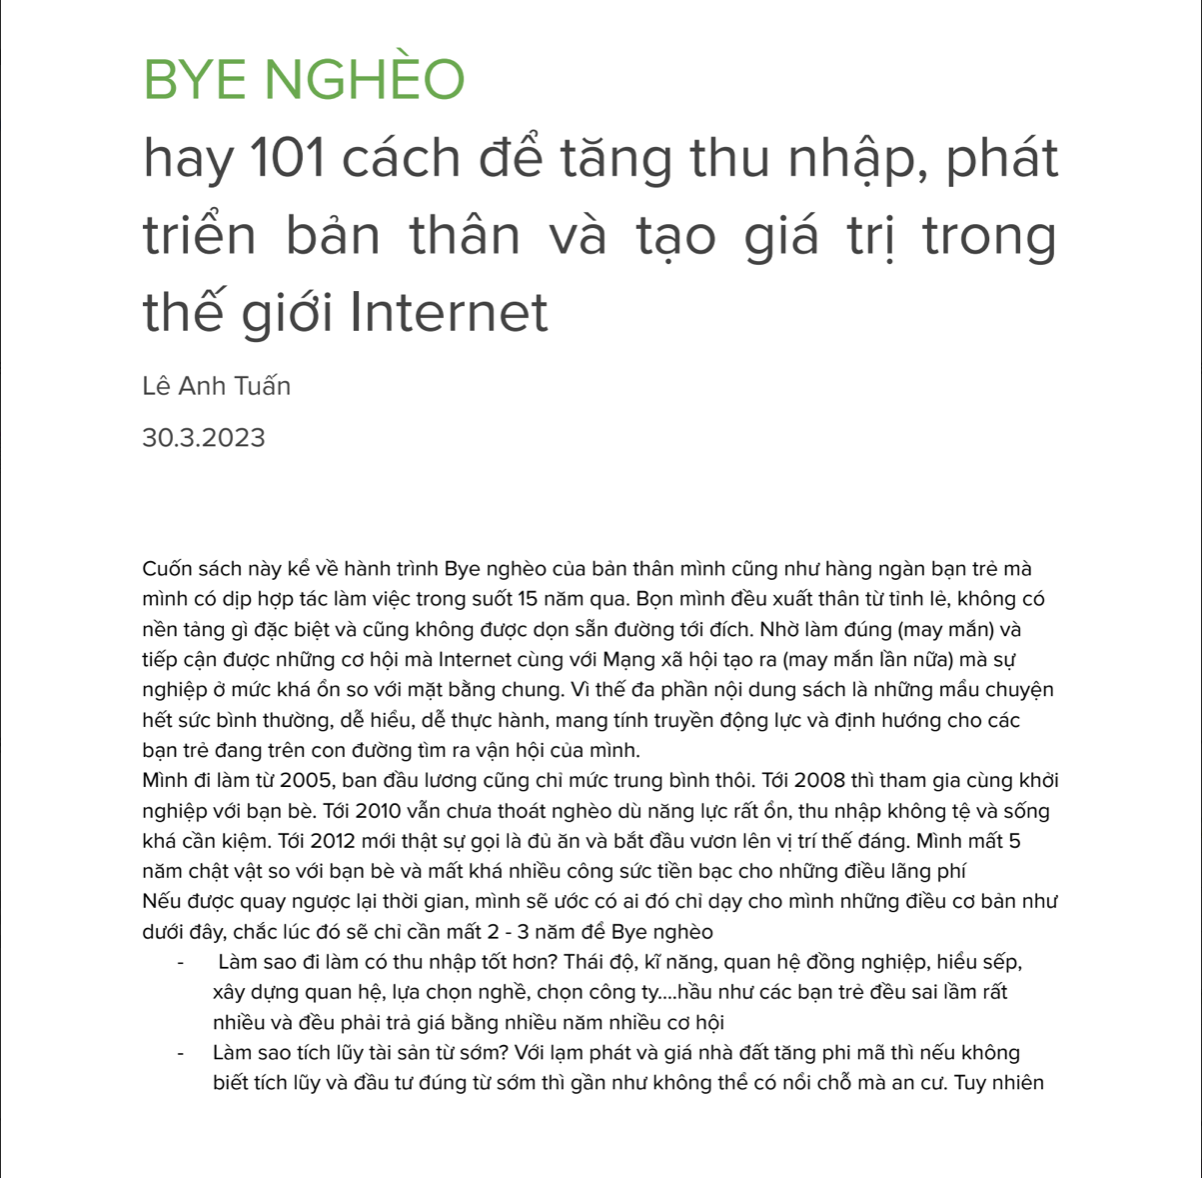  Combo ebook: Manager cực phẩm  + Triệu Đô + Bye Nghèo 